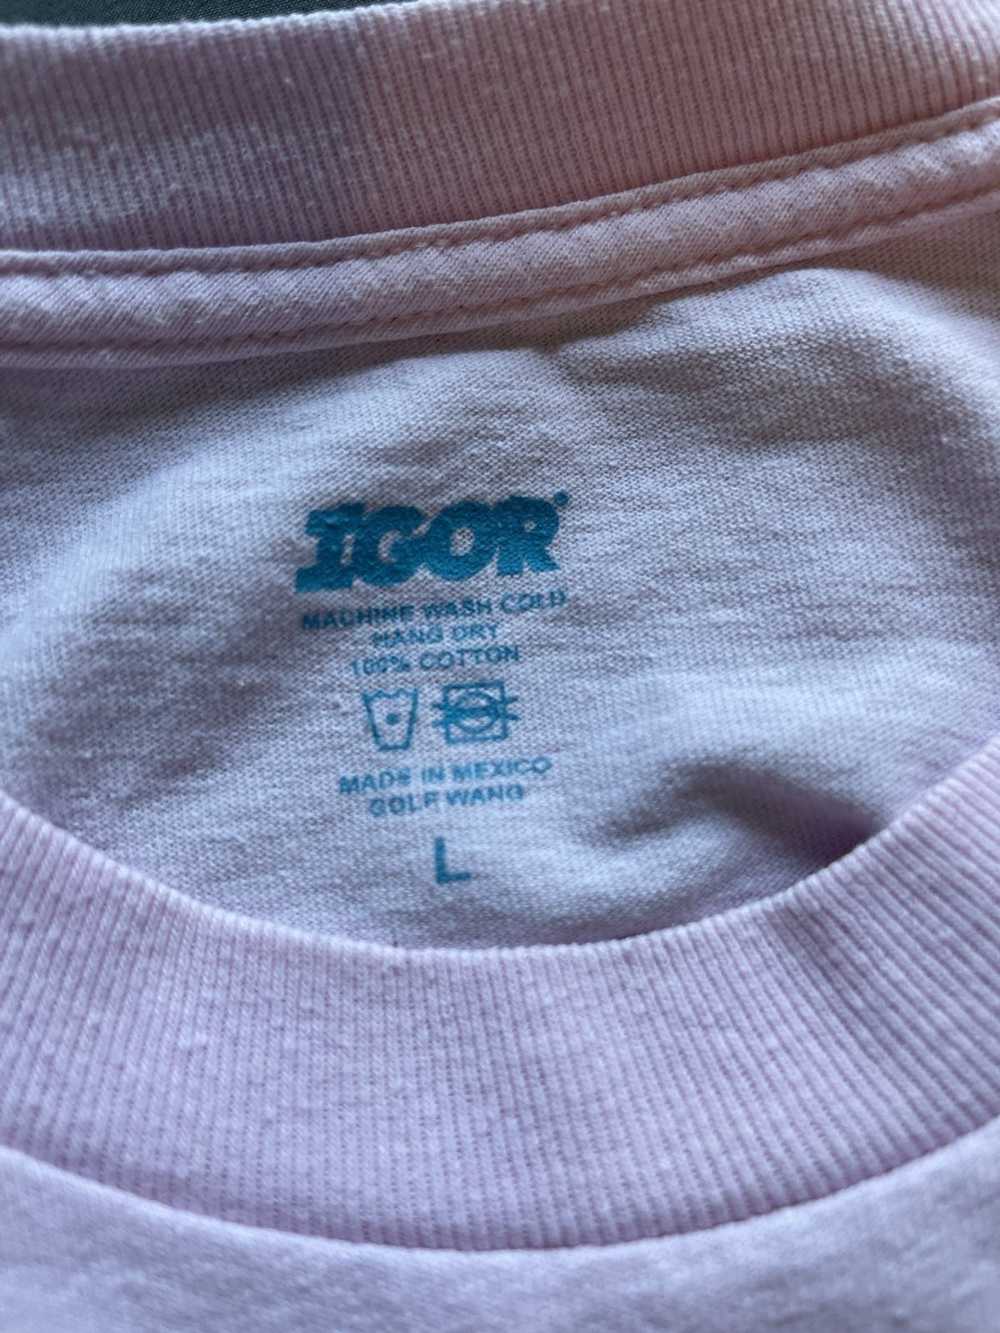 Golf Wang × Tyler The Creator Pink Igor Shirt - image 3